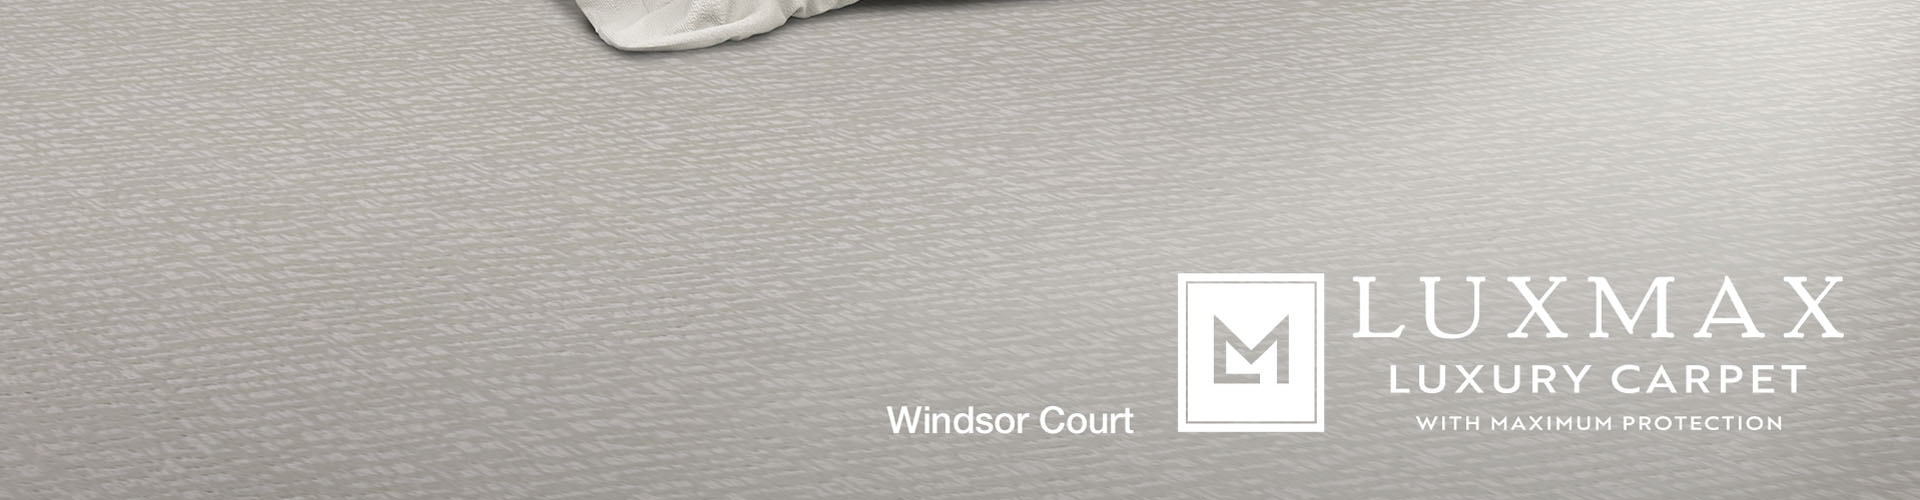 LuxMax Windsor Court